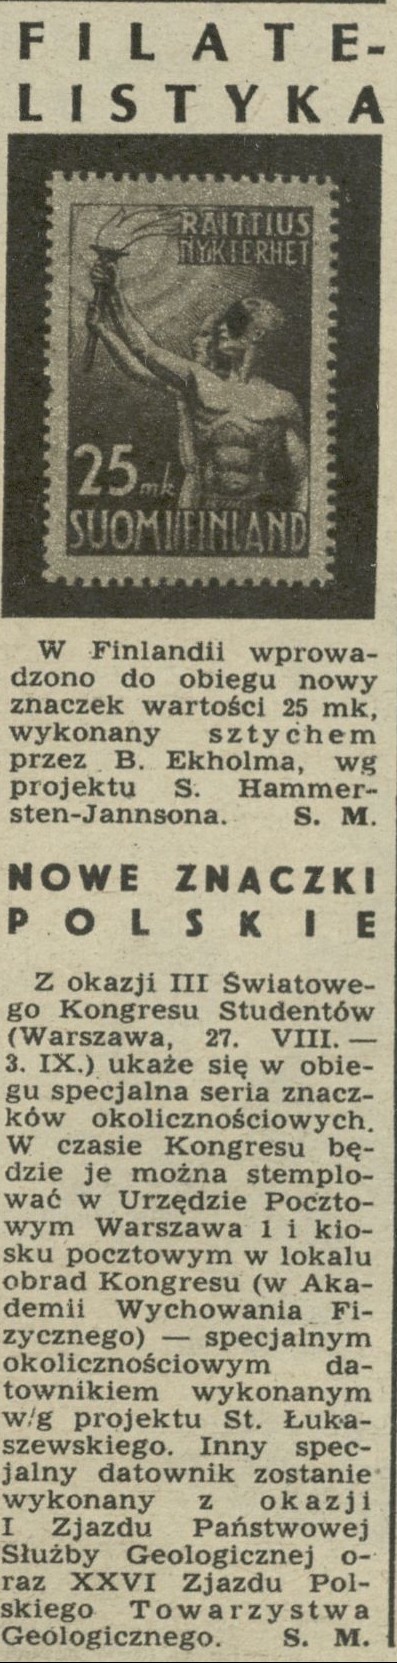 Finladia i nowe znaczki polskie